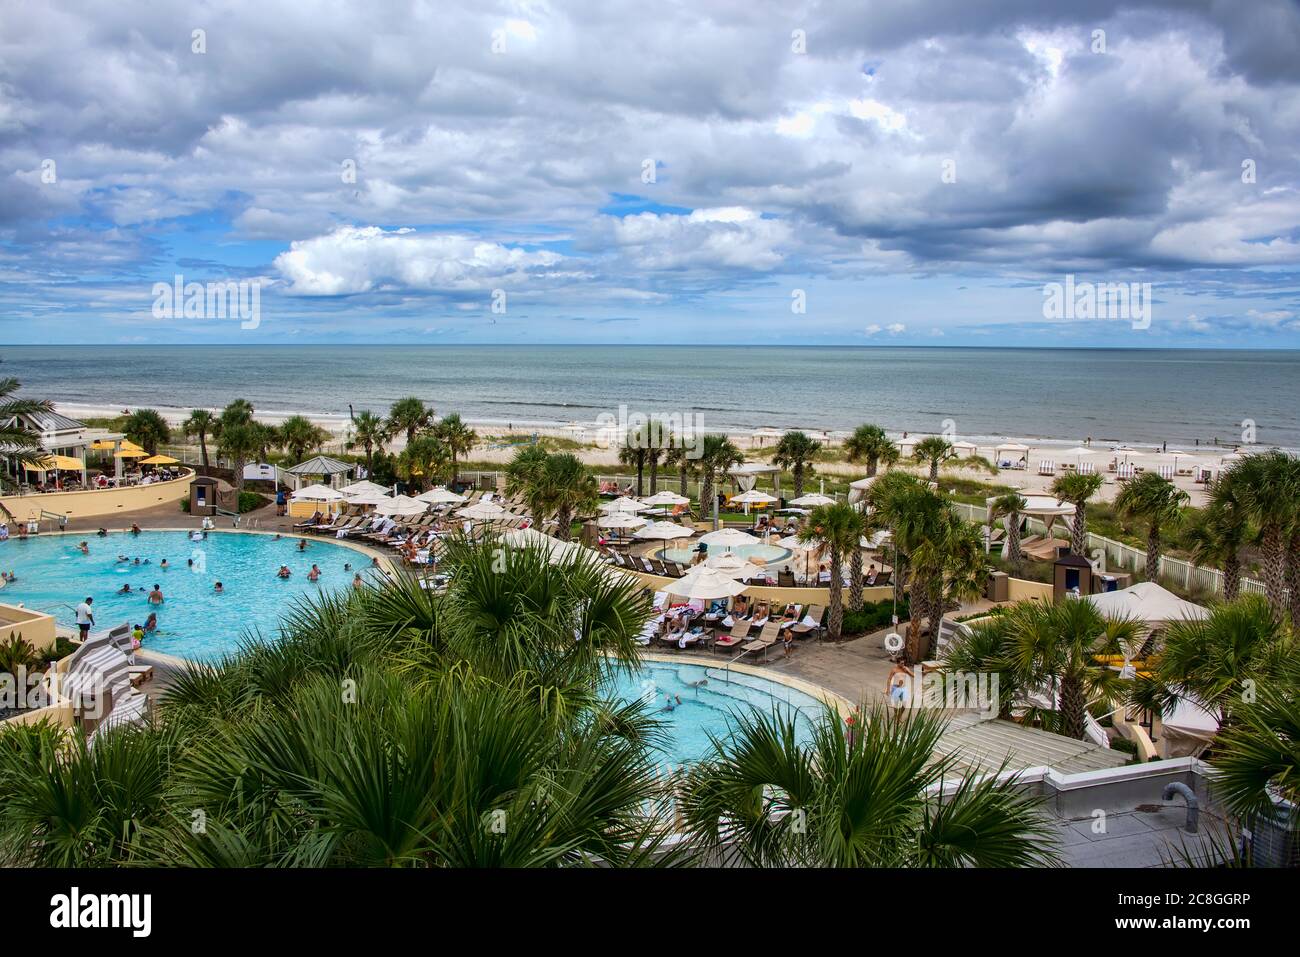 Amelia Island, Floride - 16 août 2019 : les touristes qui aiment passer une journée dans la piscine dans un hôtel de luxe sur la plage de Fernandina, sur la belle île d'Amelia Banque D'Images